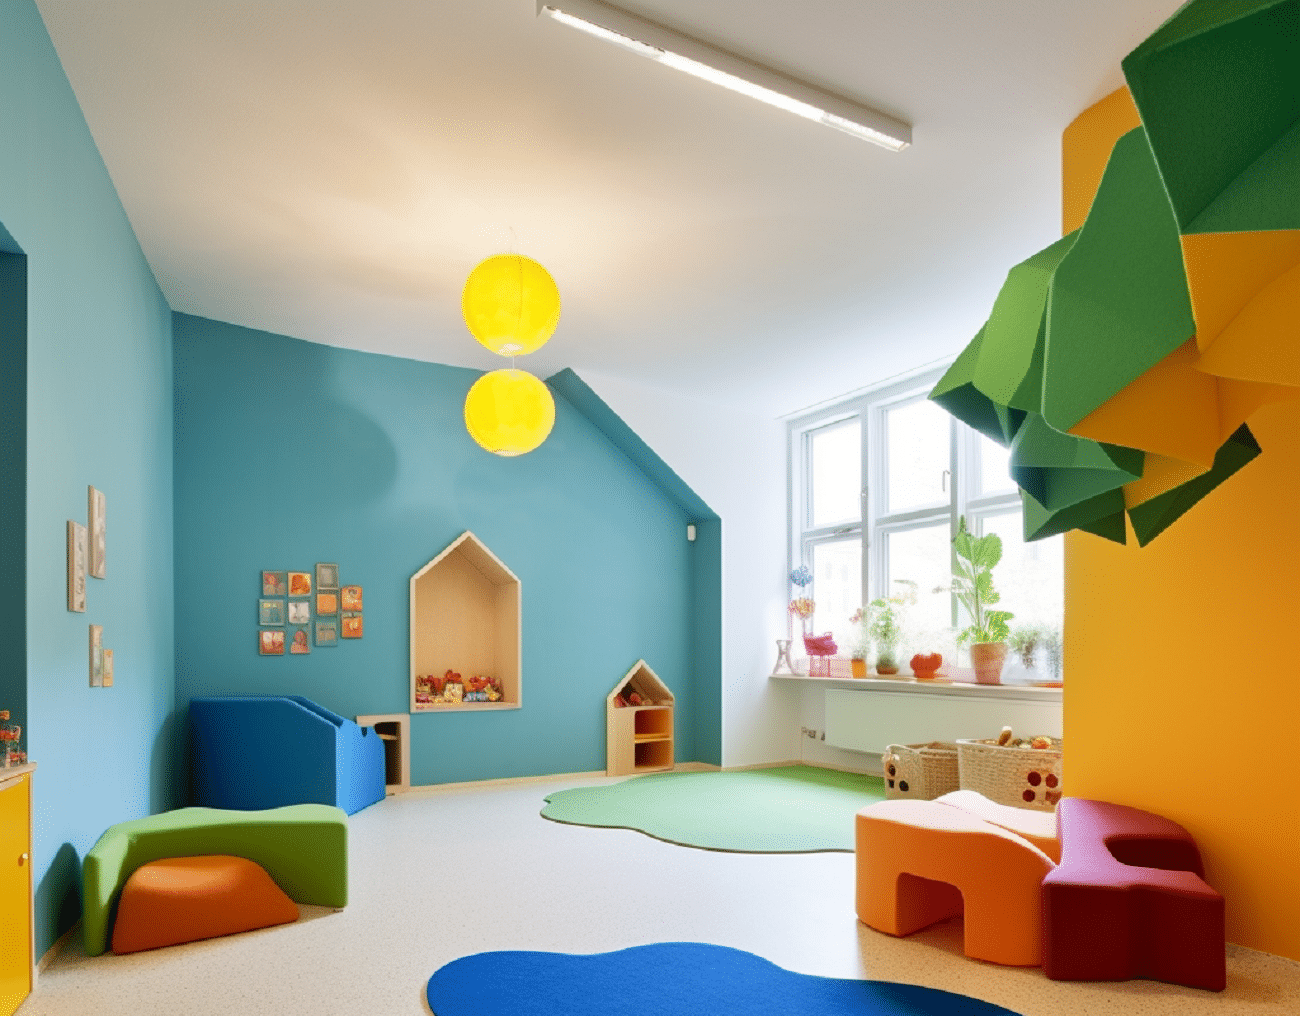 Feutres de laine naturelle de Textil Olius pour la décoration des espaces et des meubles pour enfants.